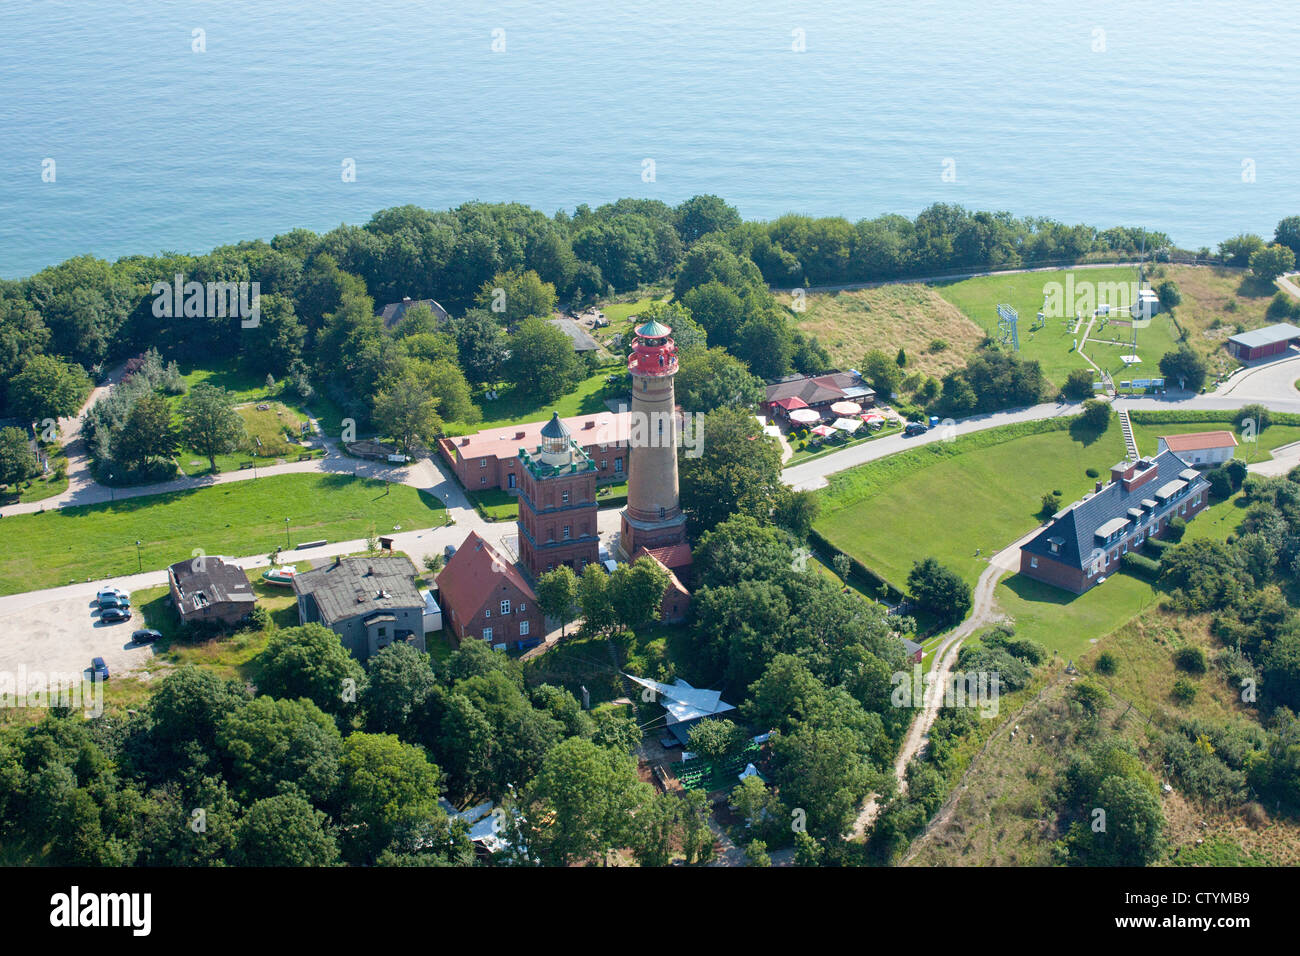 Luftbild des Kap Arkona, Insel Rügen, Mecklenburg-West Pomerania, Deutschland Stockfoto